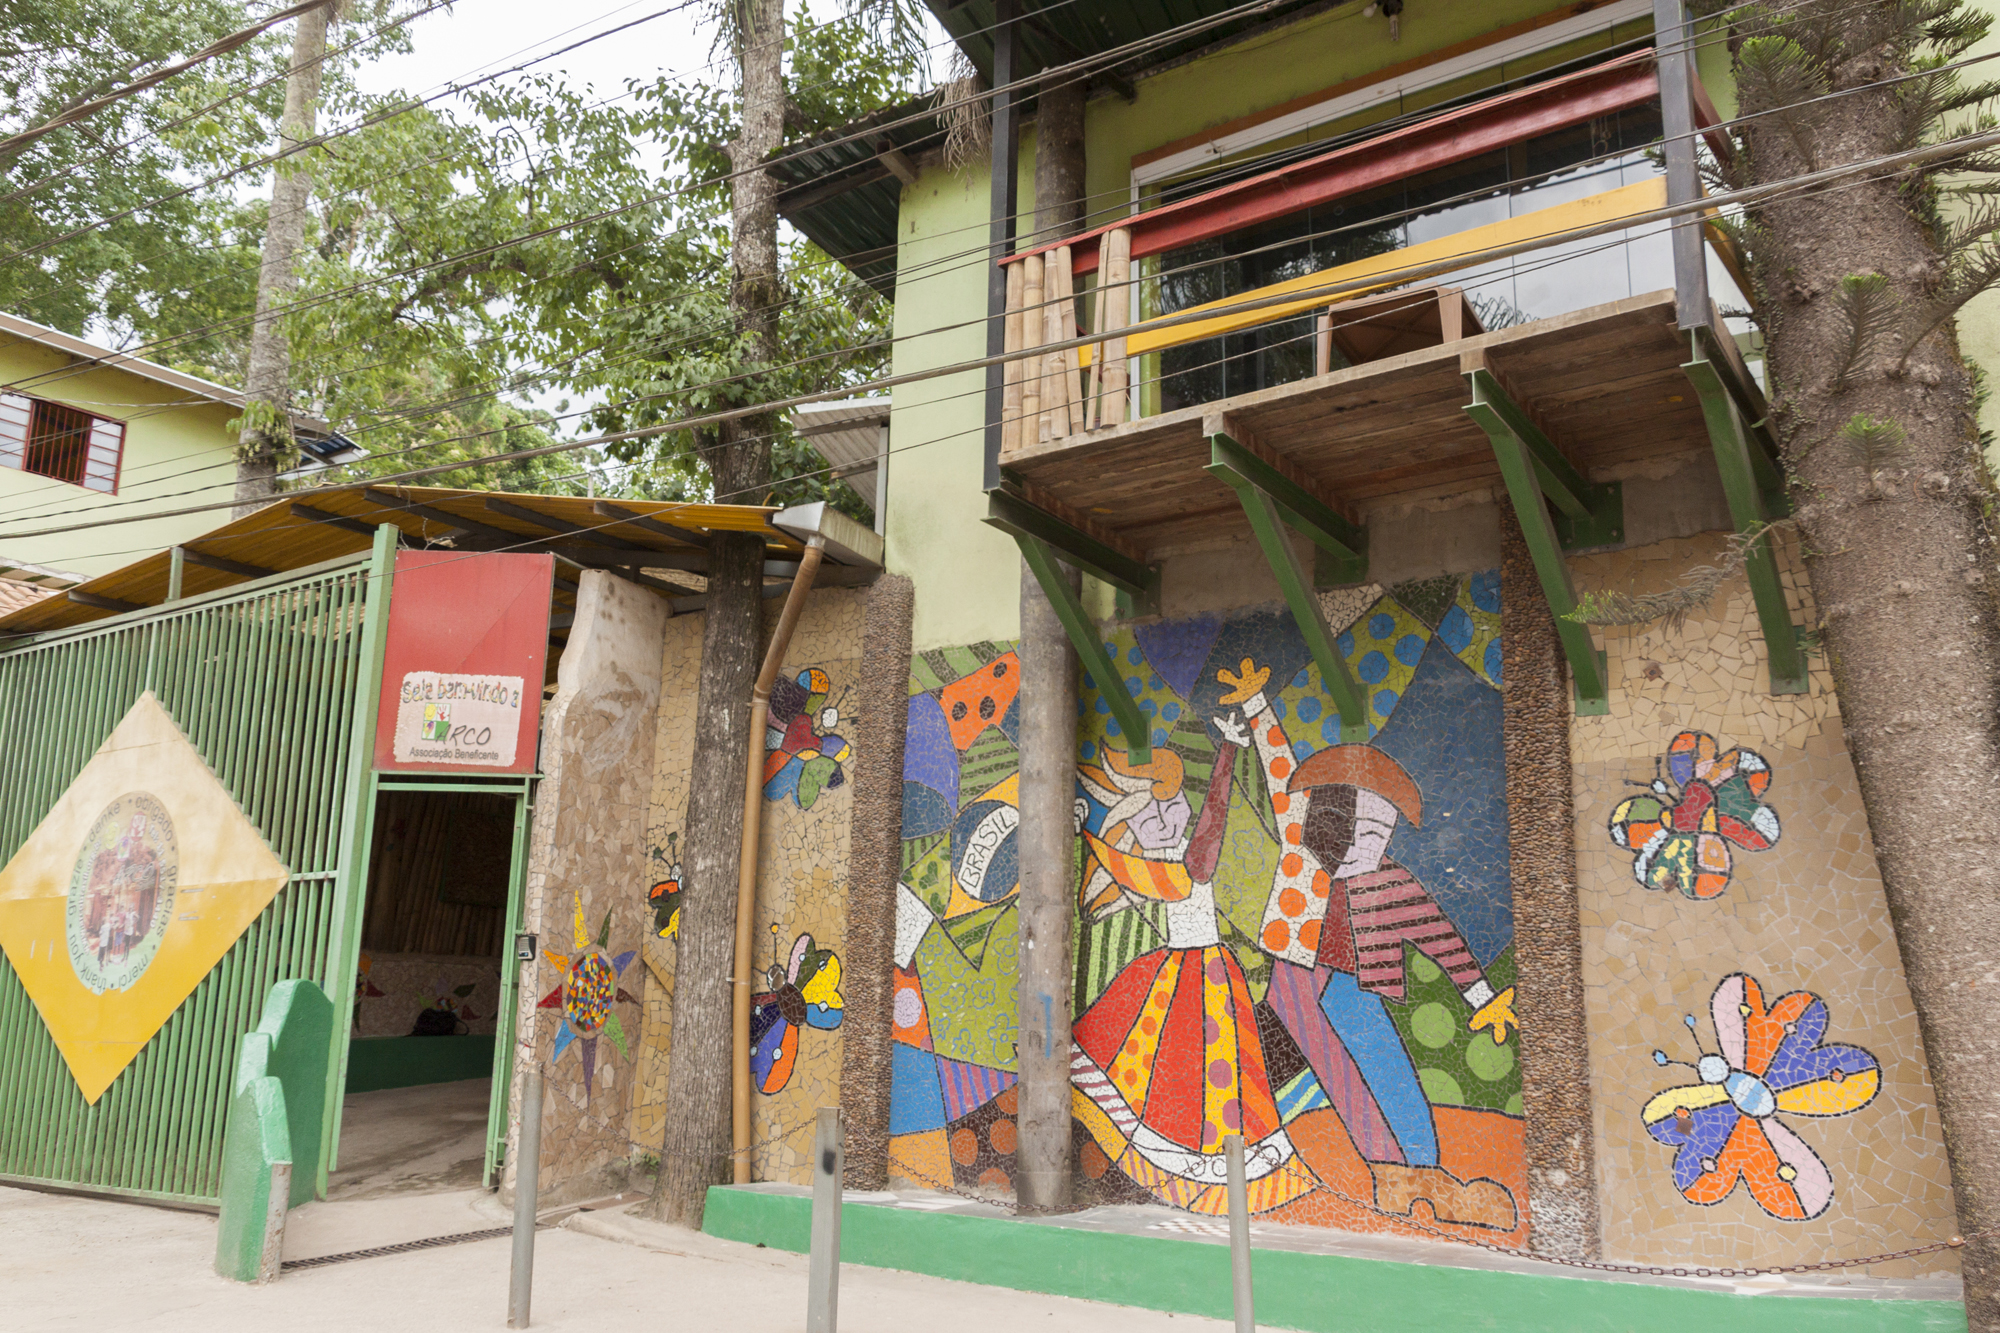 Fachada da Instituição beneficente decorada com mosaicos coloridos. Em cima da porta a esquerda, um letreiro escrito “Sejam bem vindos a ARCO”.